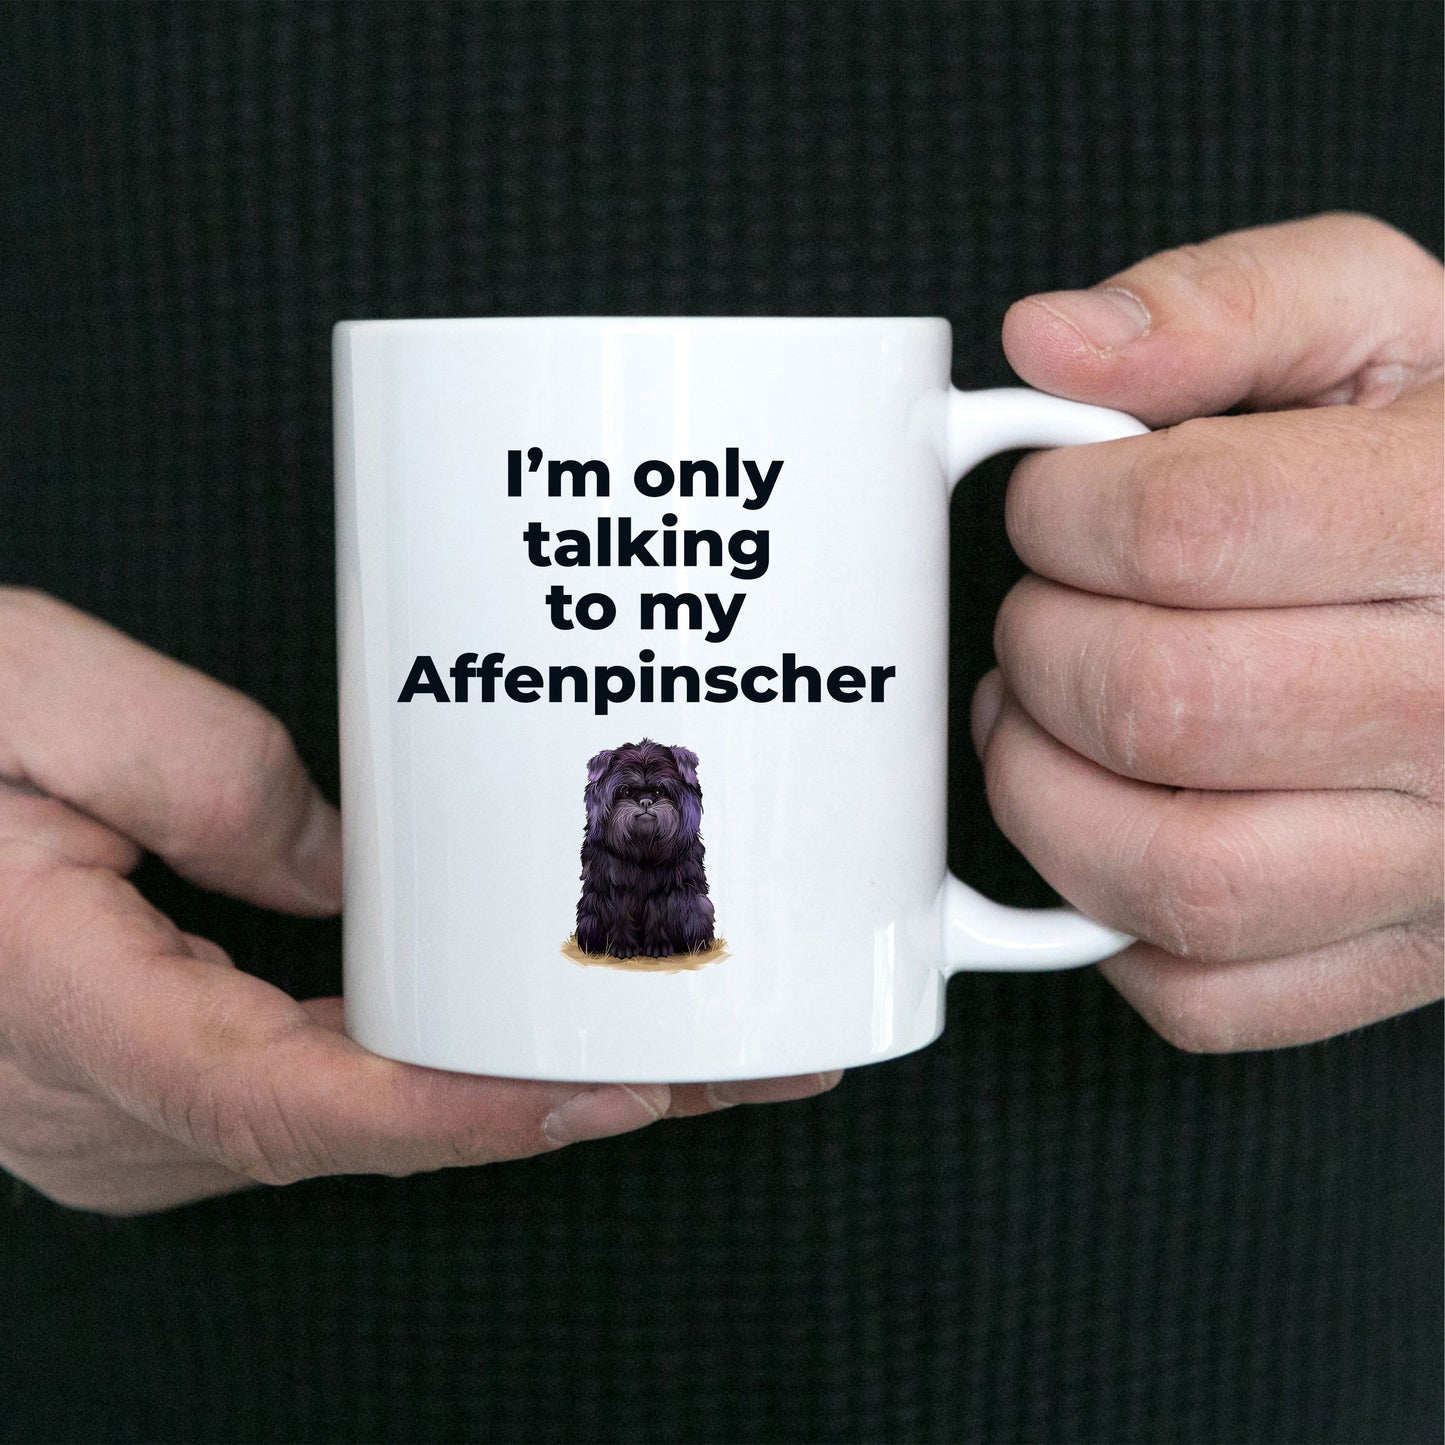 Affenpinscher dog funny coffee mug - I'm only talking to my Affenpinscher